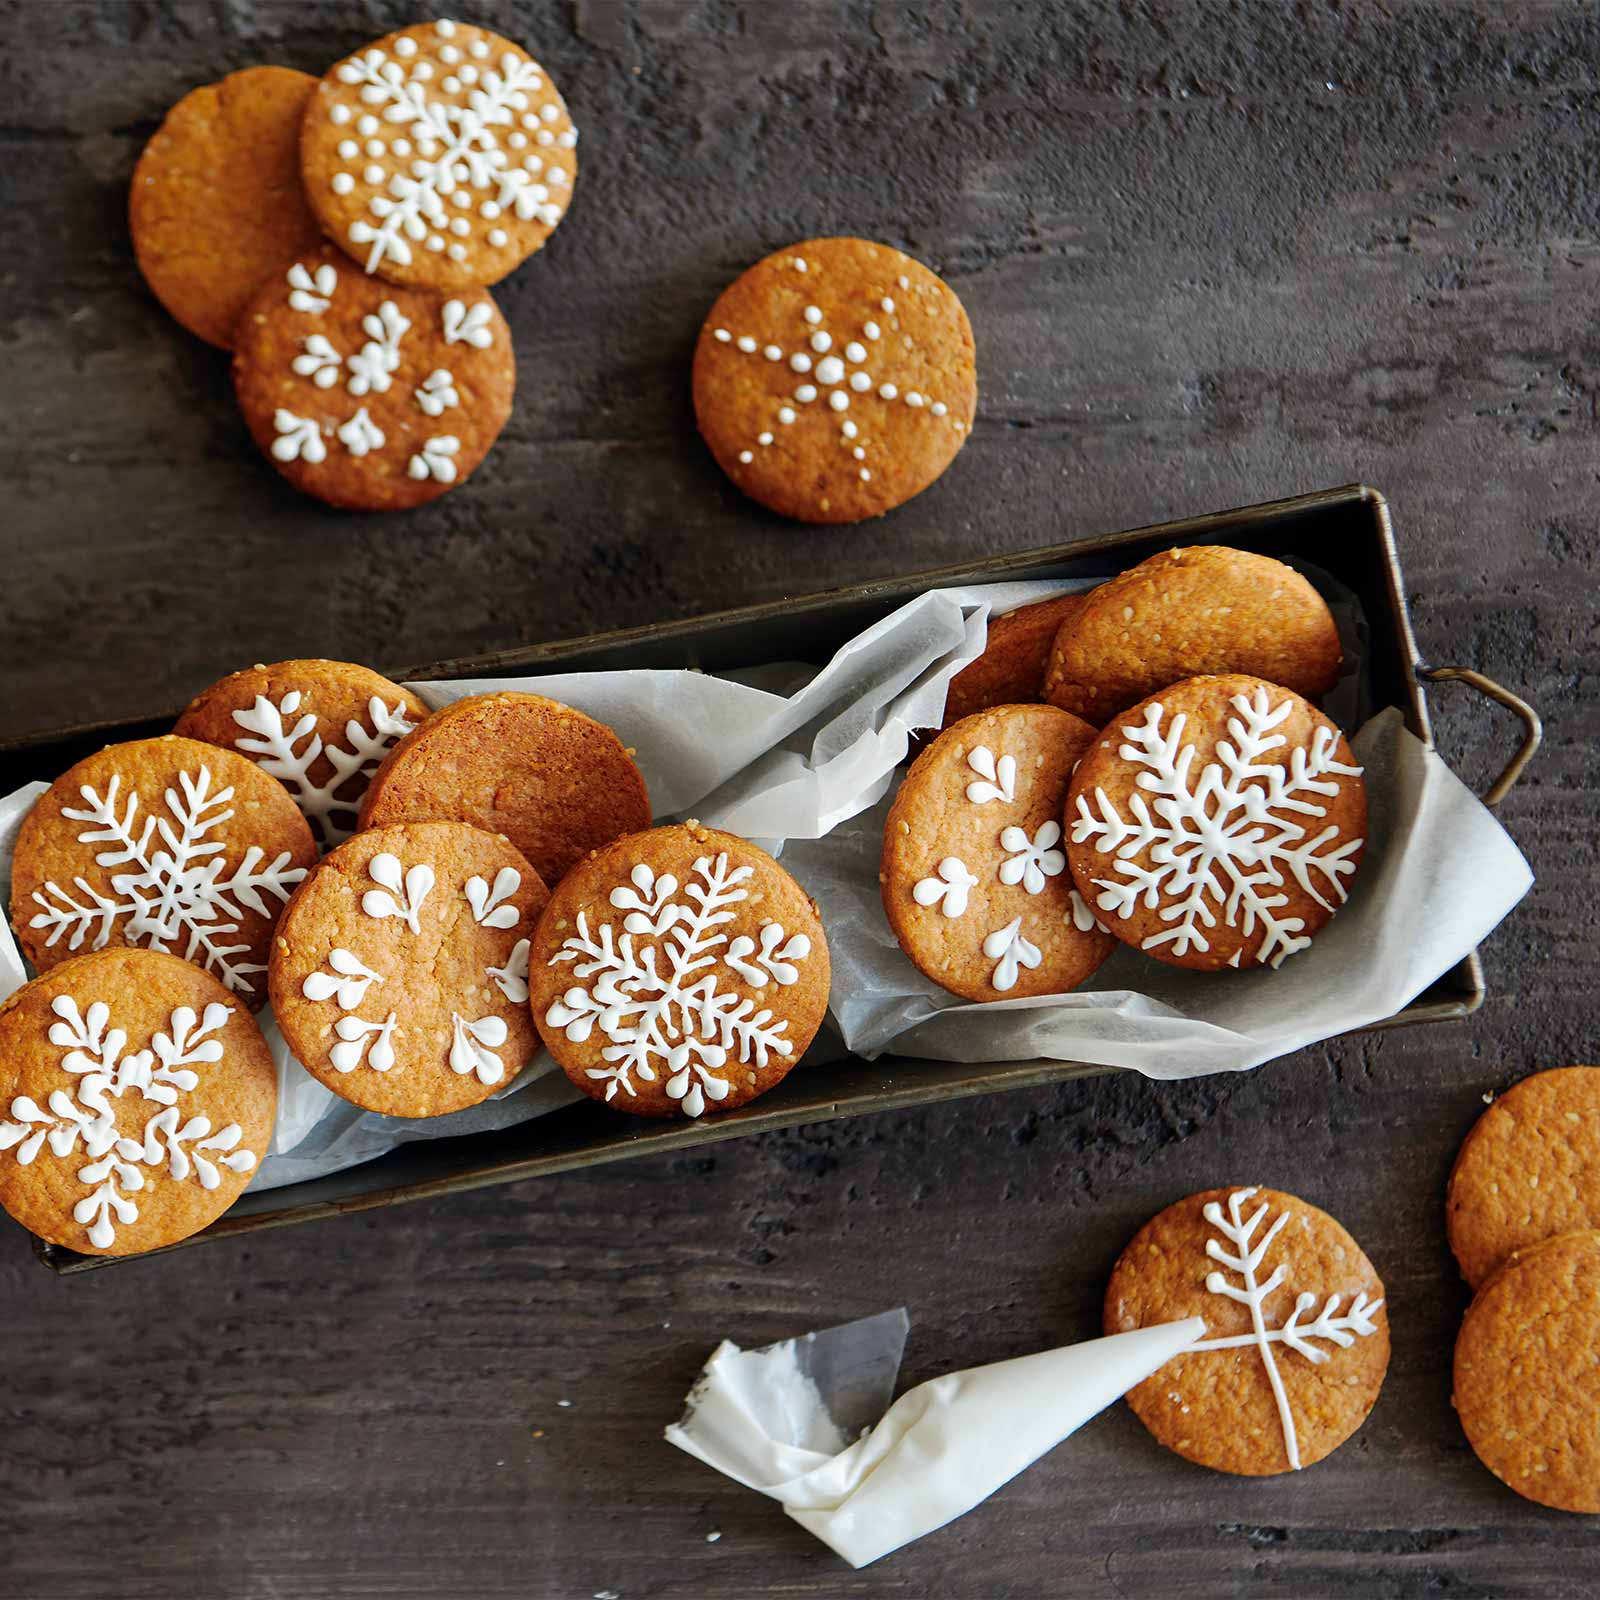 Biscuits de Noël au pain d'épice - Cuisine et Recettes - Recette